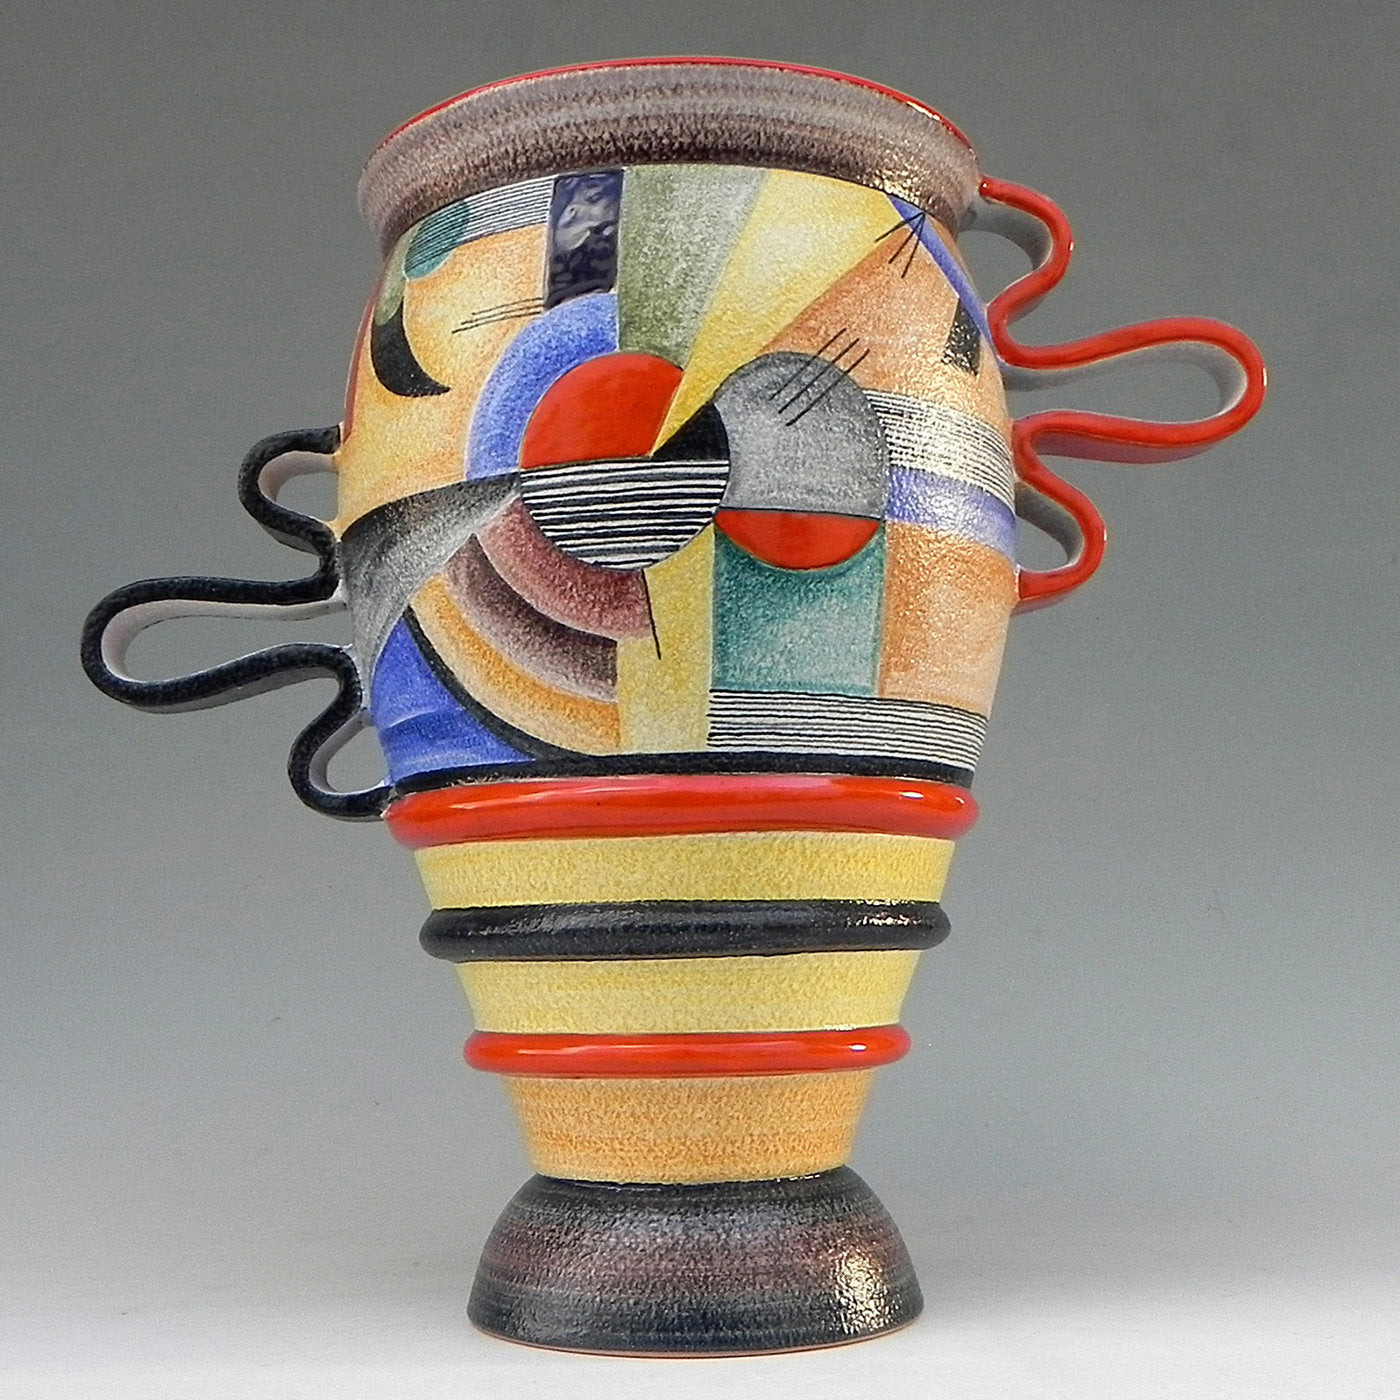 Futurista 900 Ceramic Vase - Alternative view 2